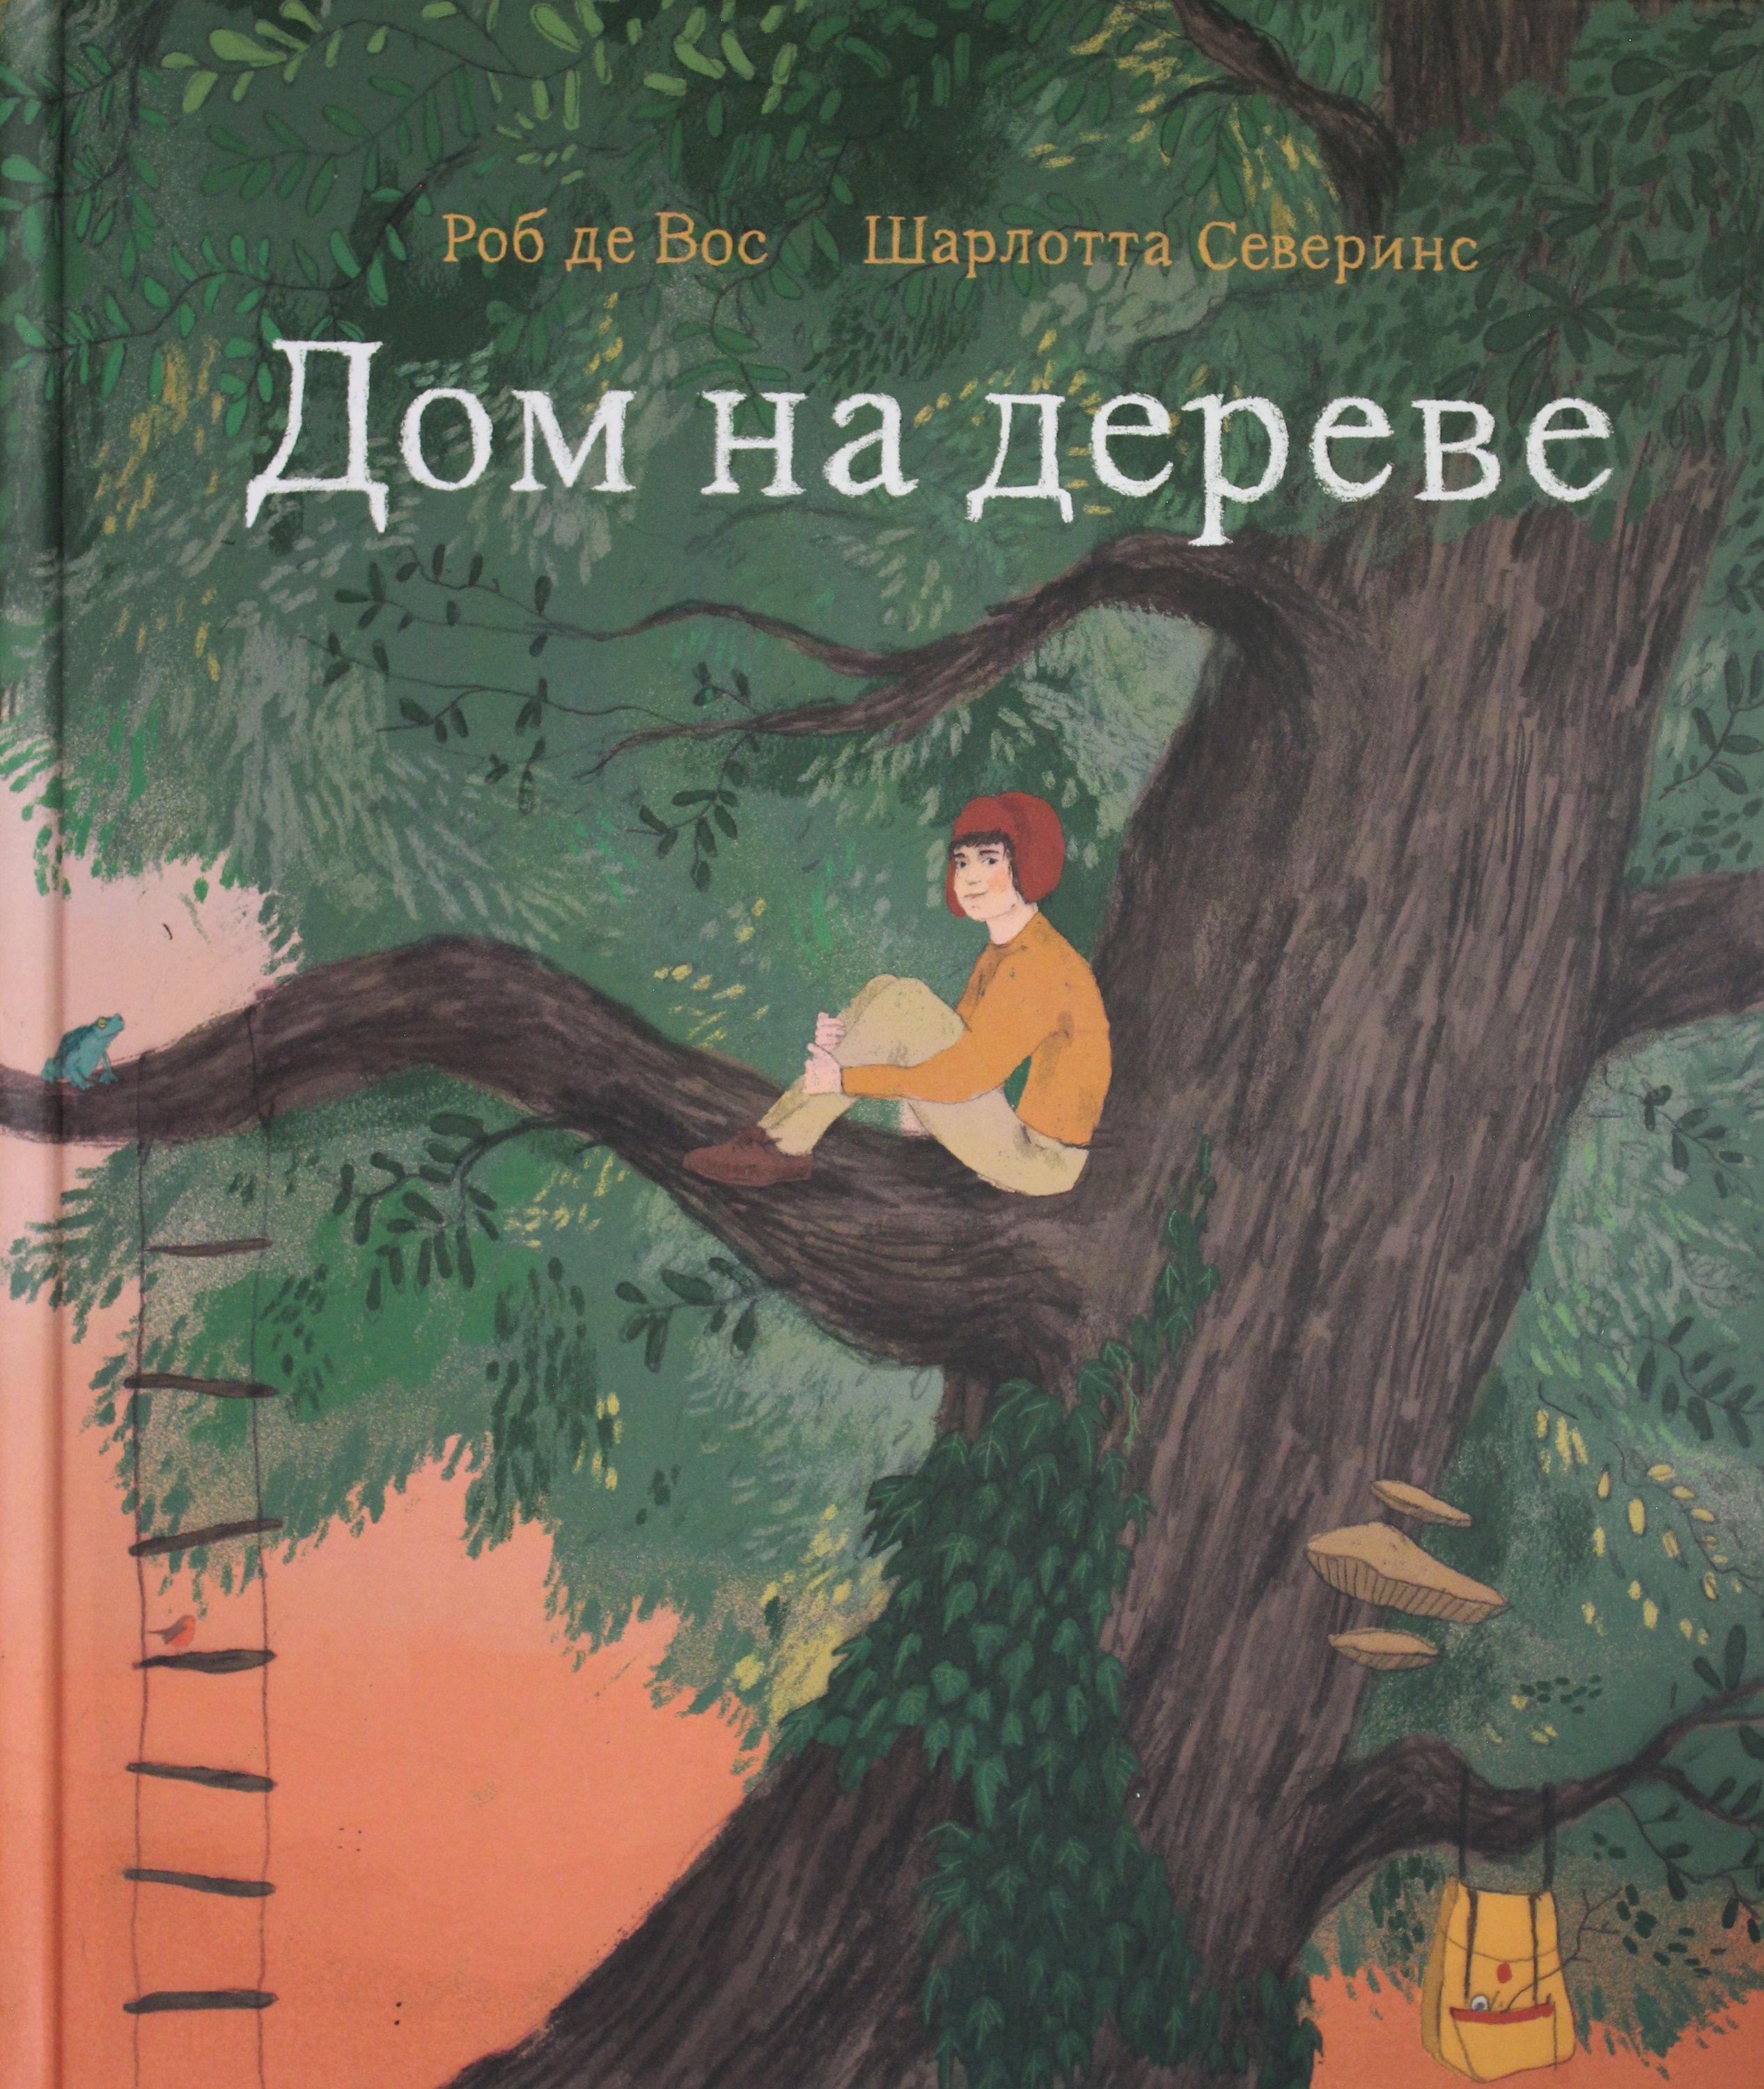 Тайны деревьев книга. Роб де Вос "дом на дереве". Роб де Вос, Шарлота Северинс "дом на дереве". Дом на дереве книга. Книги про деревья для детей.